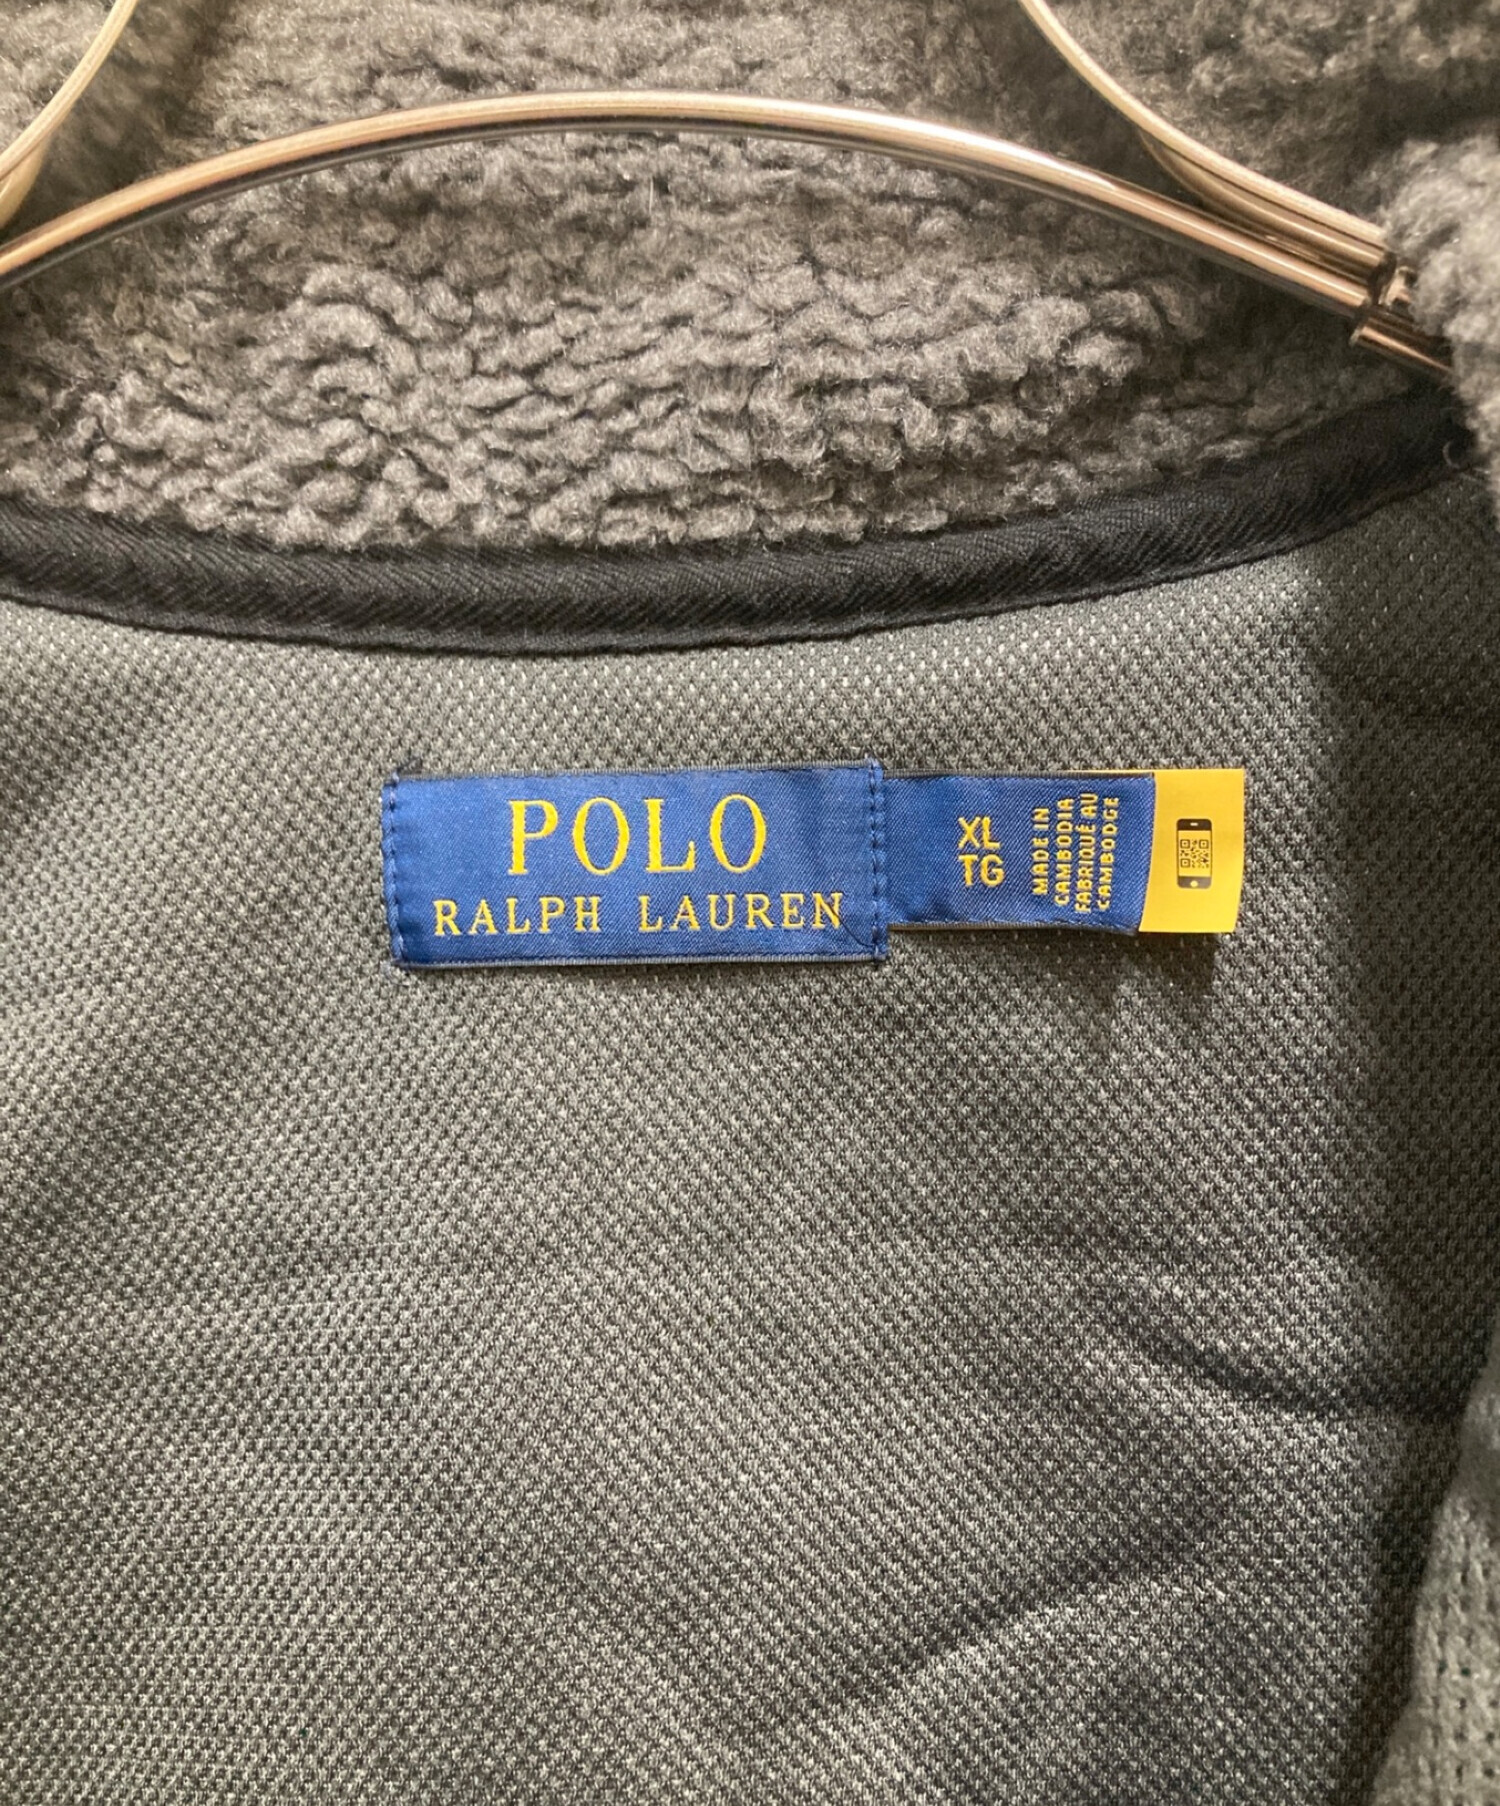 POLO RALPH LAUREN (ポロ・ラルフローレン) フリースジャケット グレー サイズ:XL